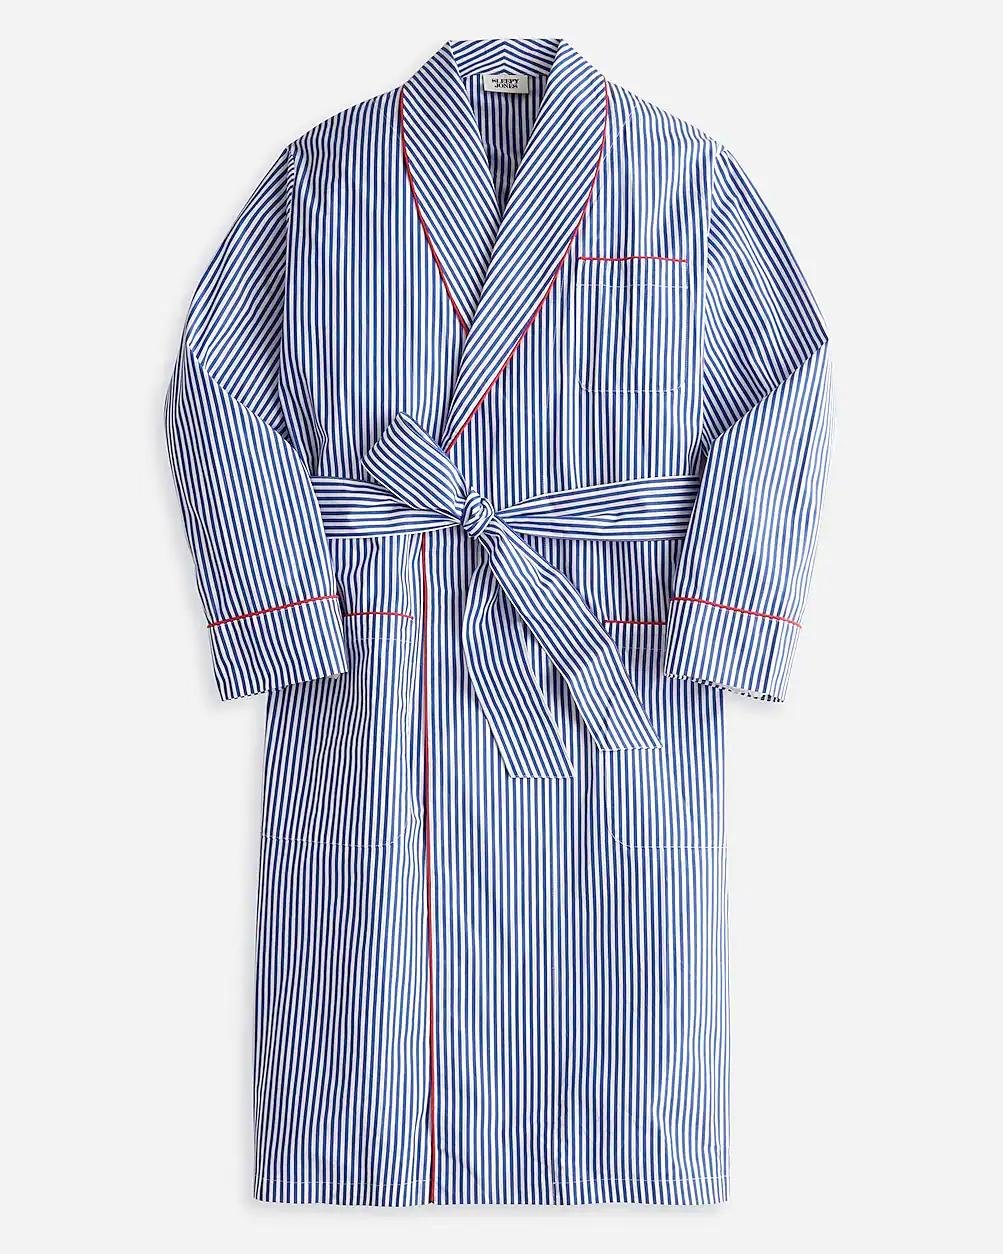 Sleepy Jones men's Glenn robe in blue and white stripe by J.CREW